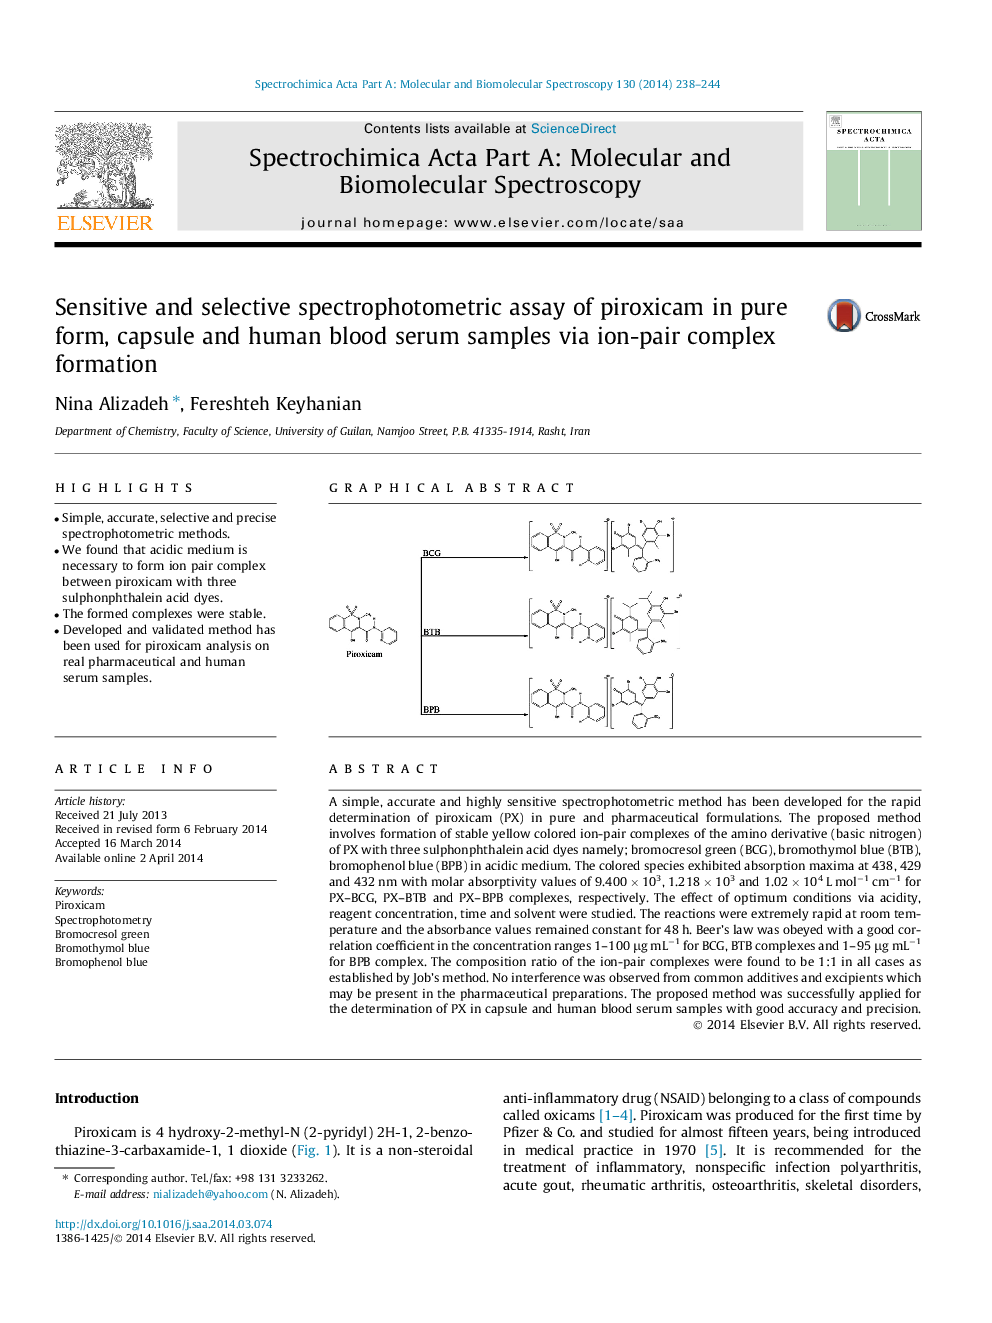 سنجش اسپکتروفتومتری حساس و انتخابی پریروزیکسام در نمونه های خالص، کپسول و سرم خون انسان با استفاده از فرمول ترکیبی جفتی یونی 